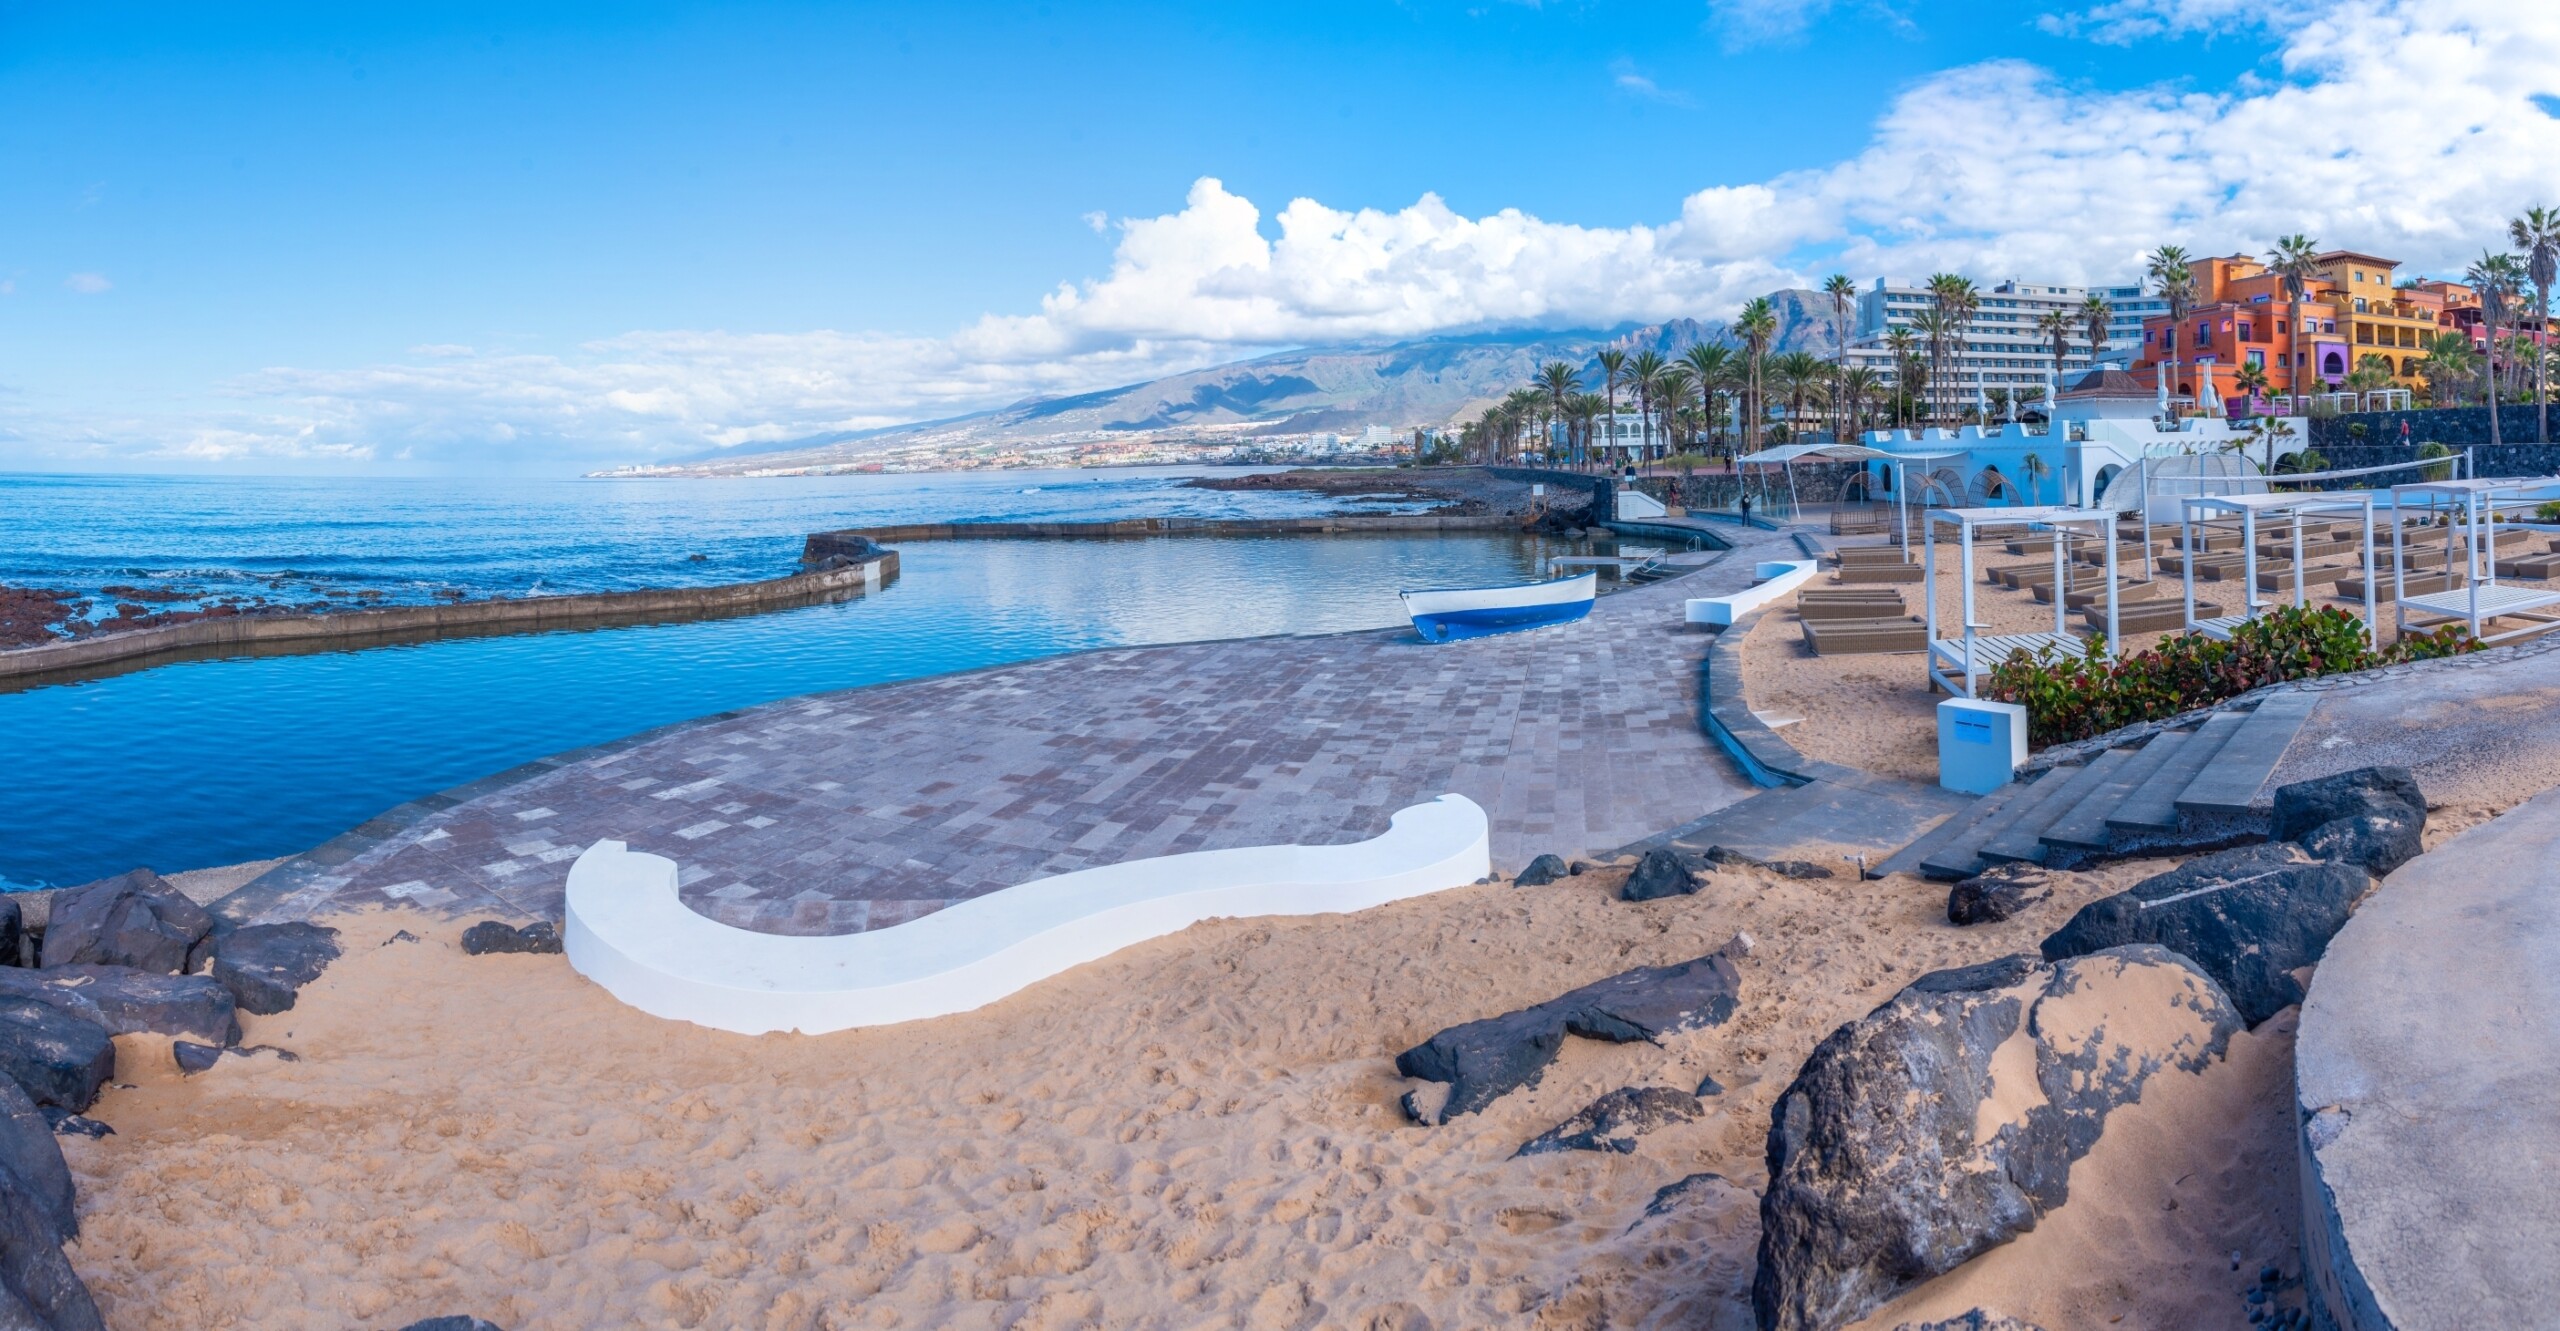 Leżaki w Playa de las Americas na Teneryfie, Wyspy Kanaryjskie, Hiszpania, licencja: shutterstock/By pavel+dudek